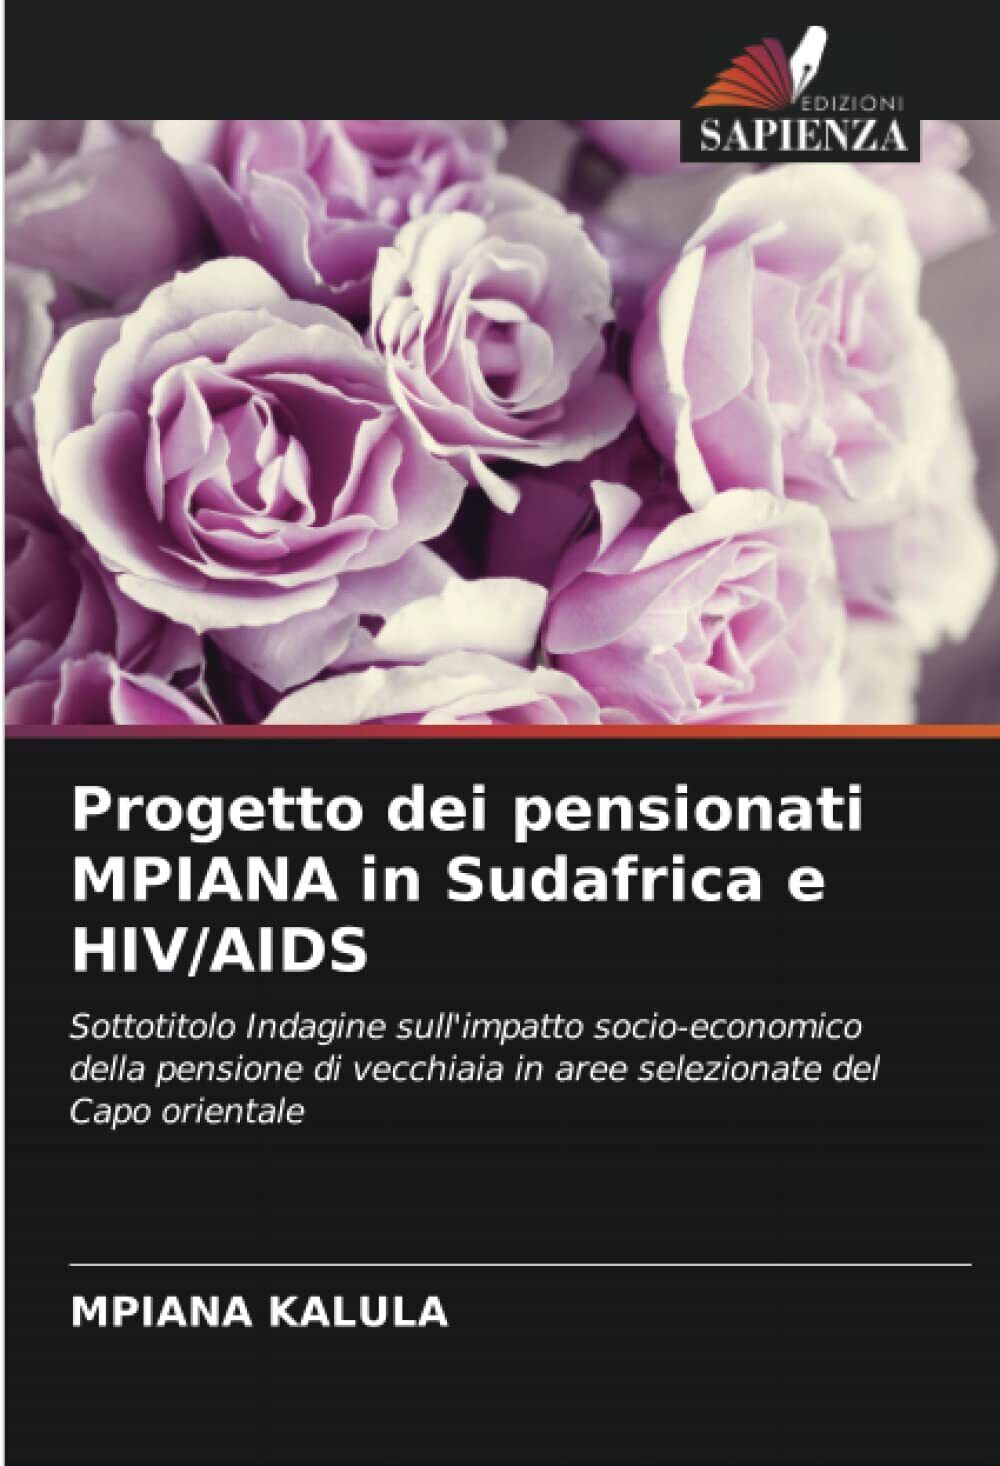 Progetto dei pensionati MPIANA in Sudafrica e HIV/AIDS - Mpiana Kalula - 2021